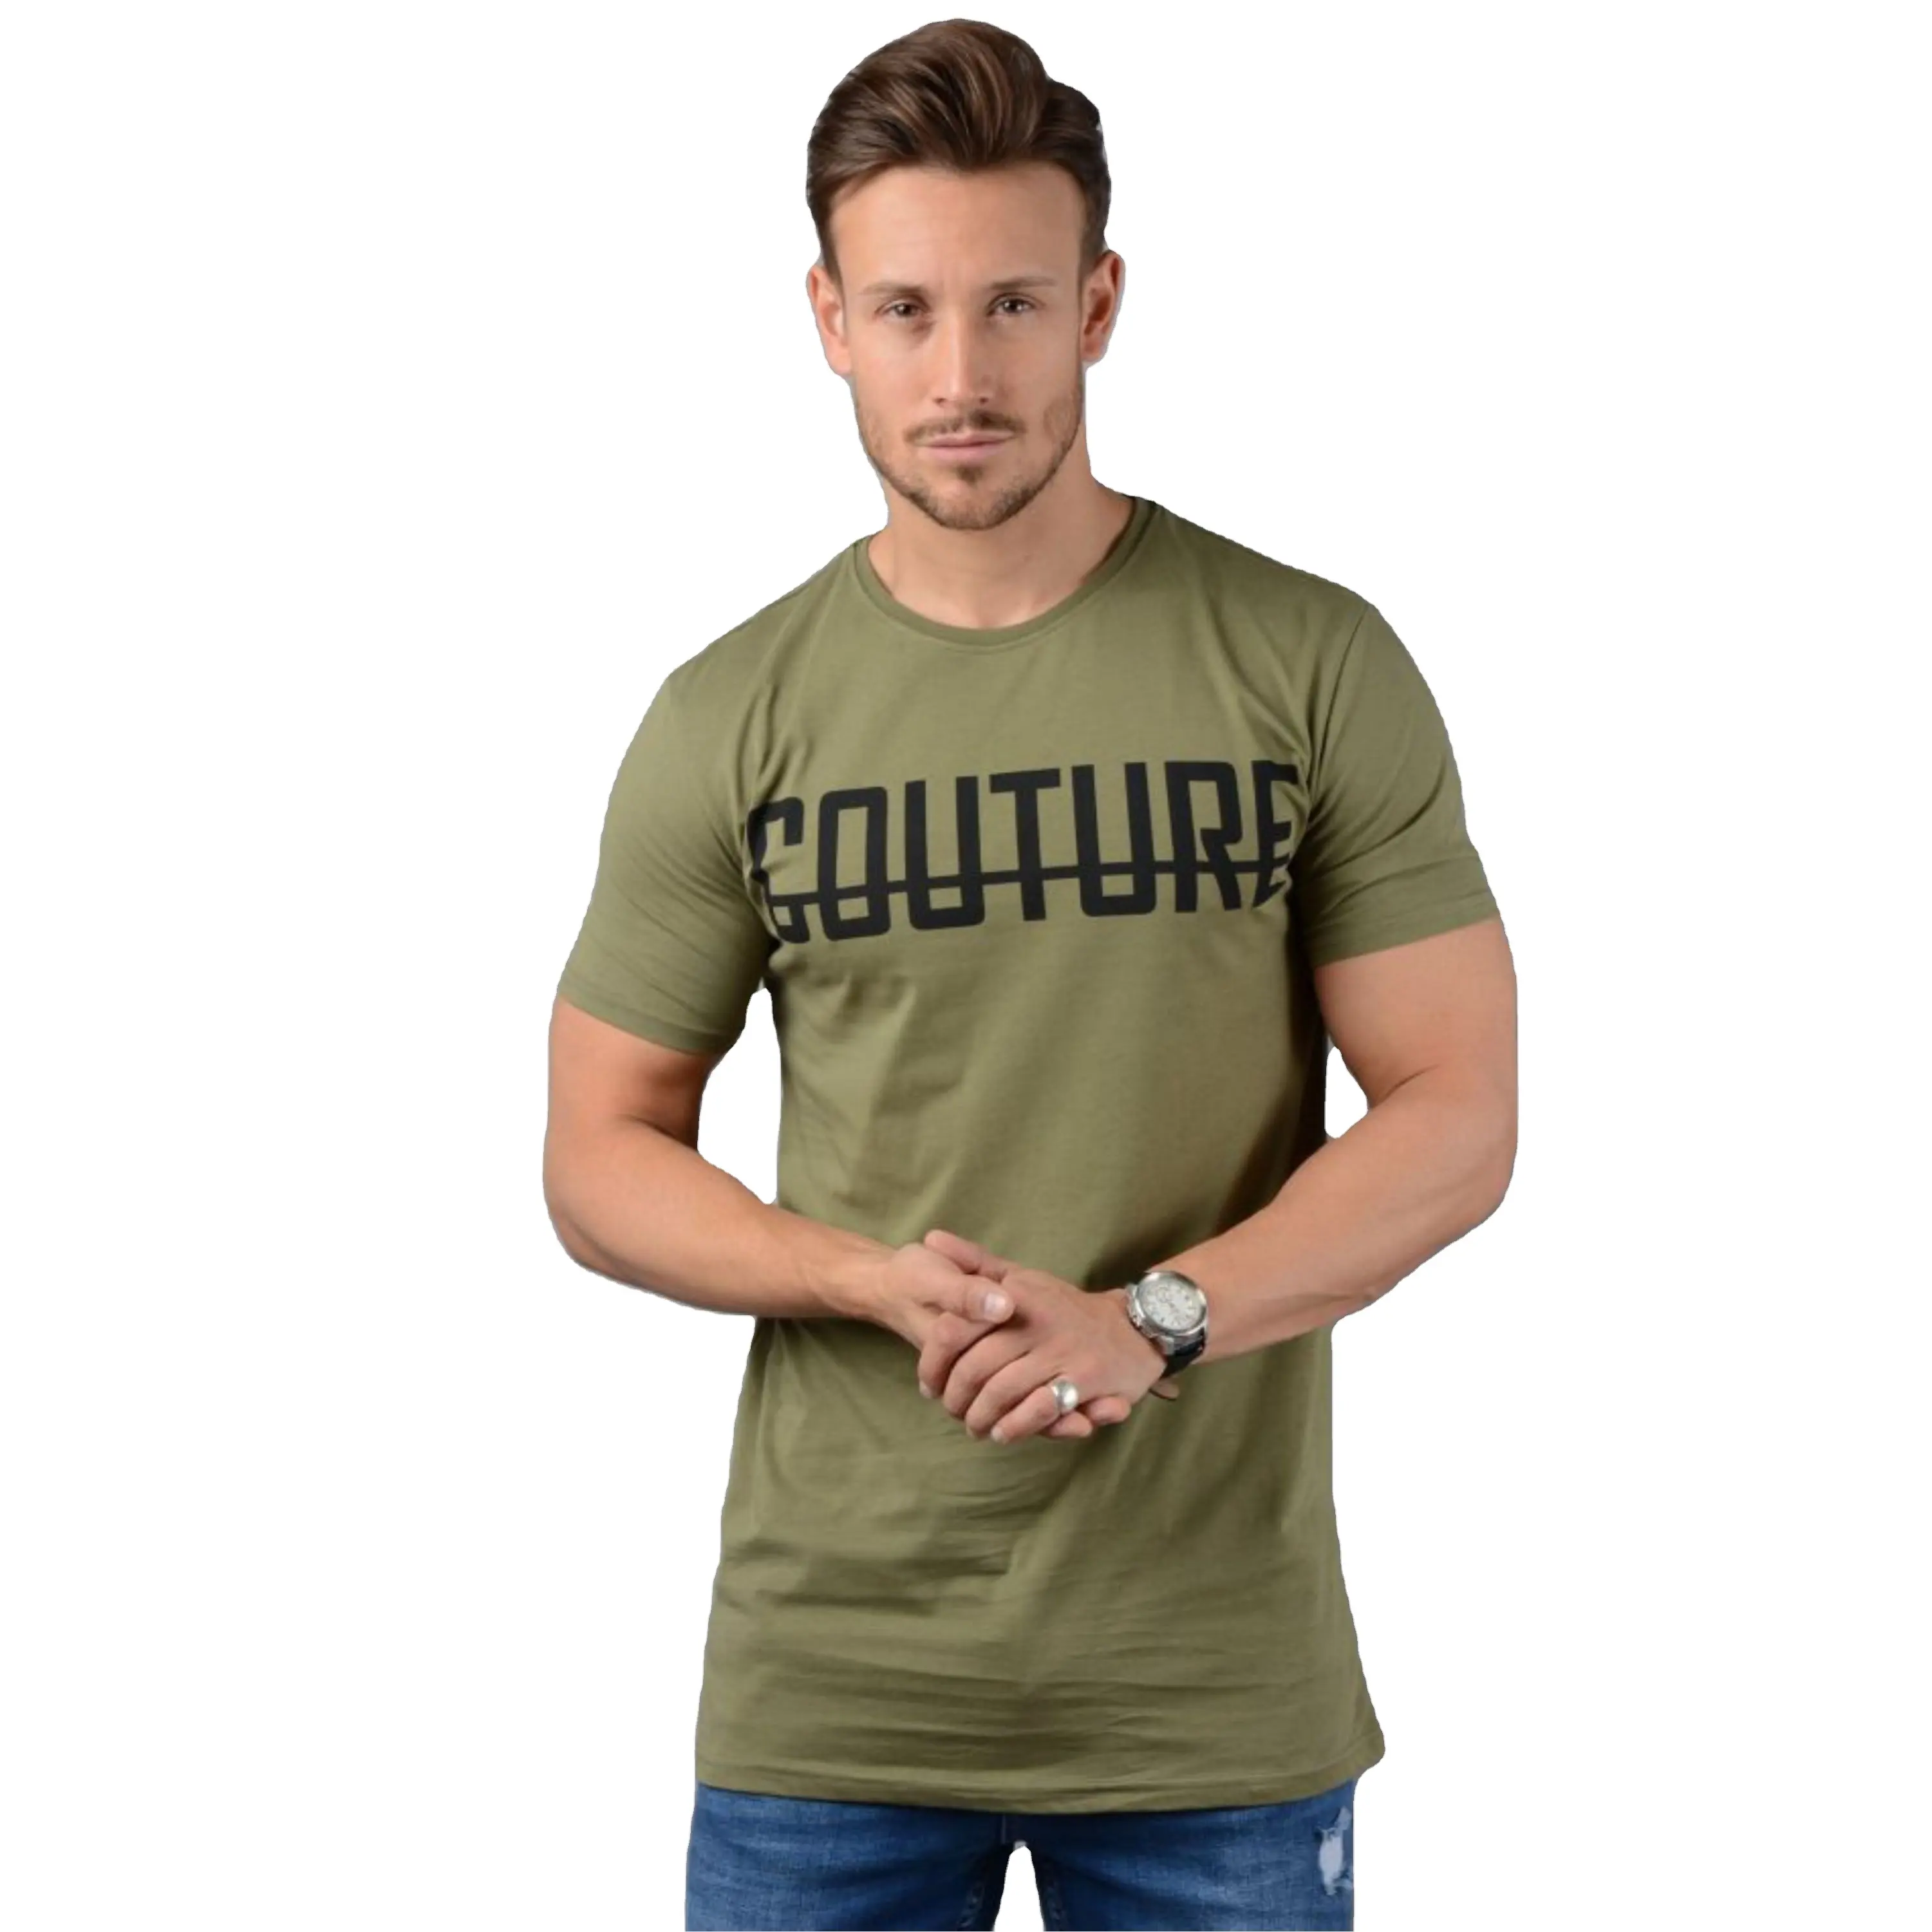 Toptan erkek moda nefes düz uzun boy tişört haki yeşil T Shirt fabrika fiyat üreticisi